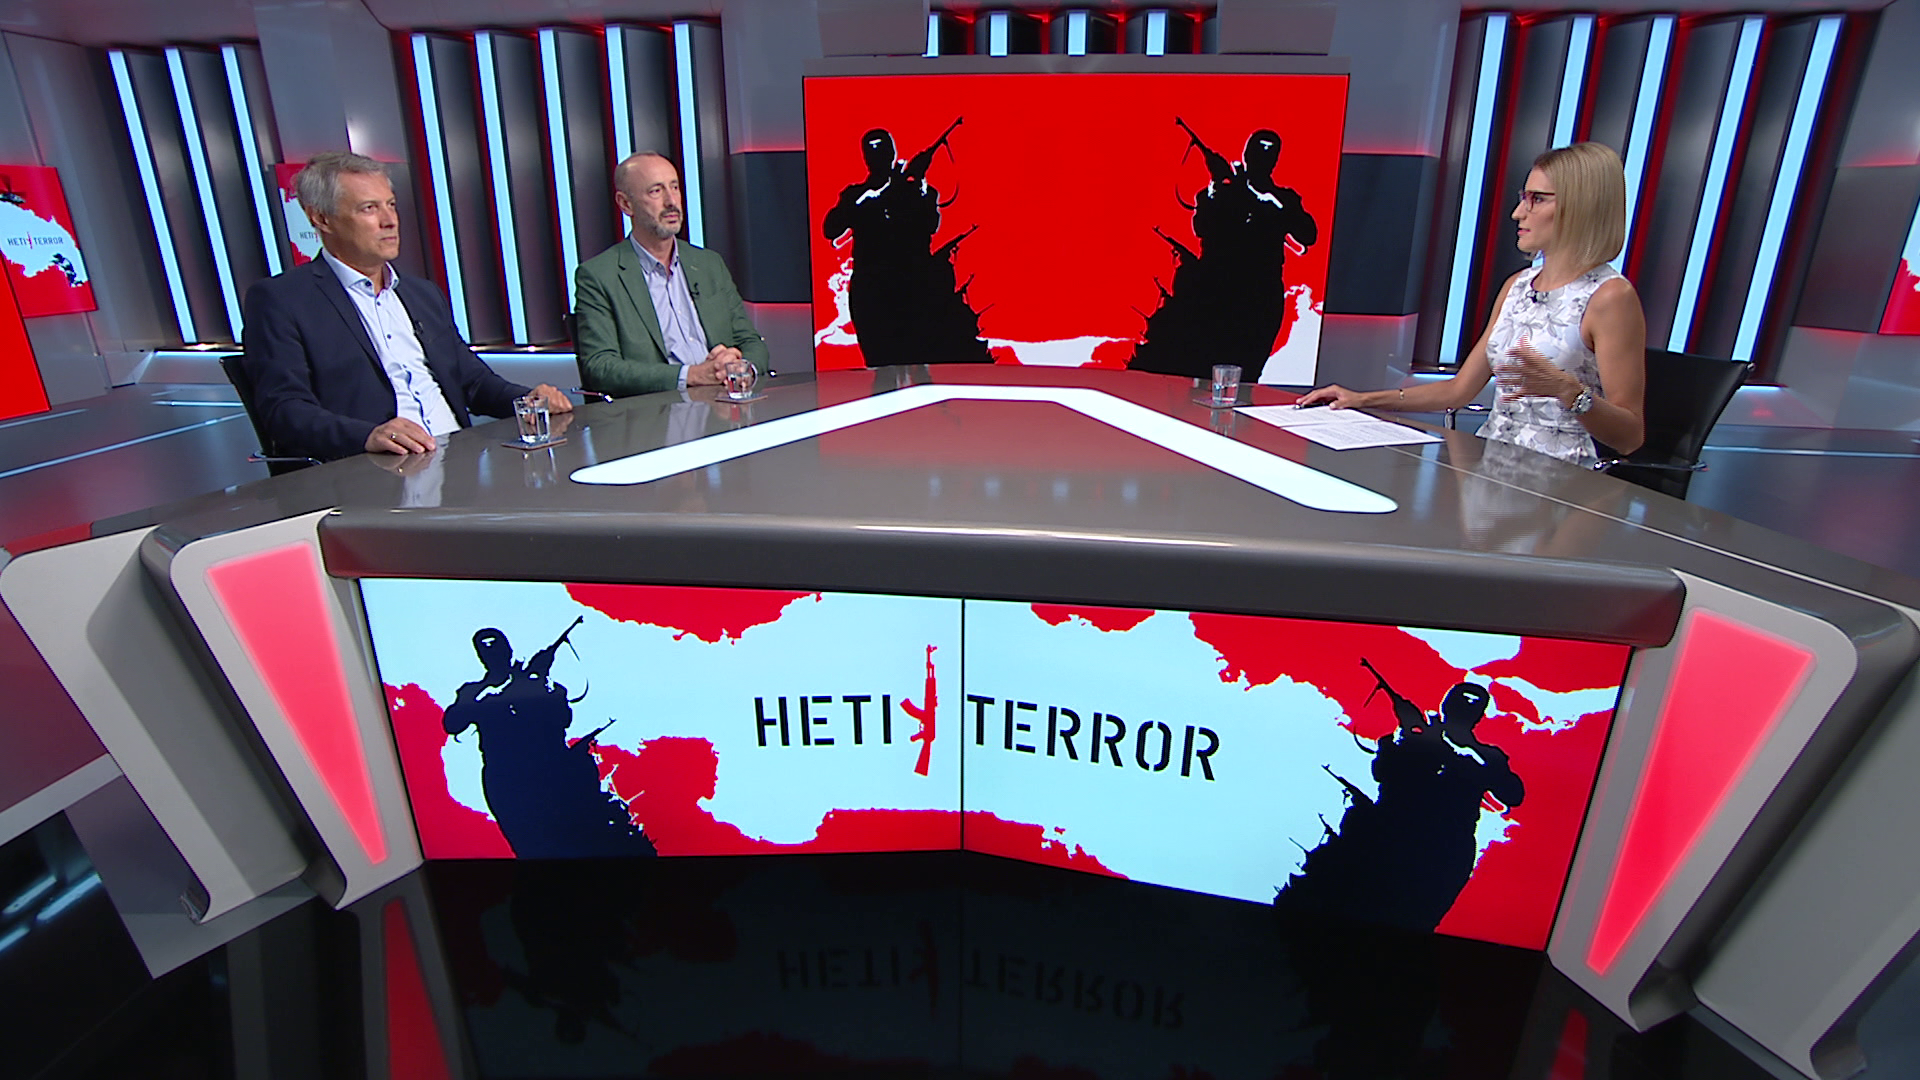 Heti terror: Az integráció sokkal nehezebb, mint ahogy ezt feltételezték Nyugat-Európában